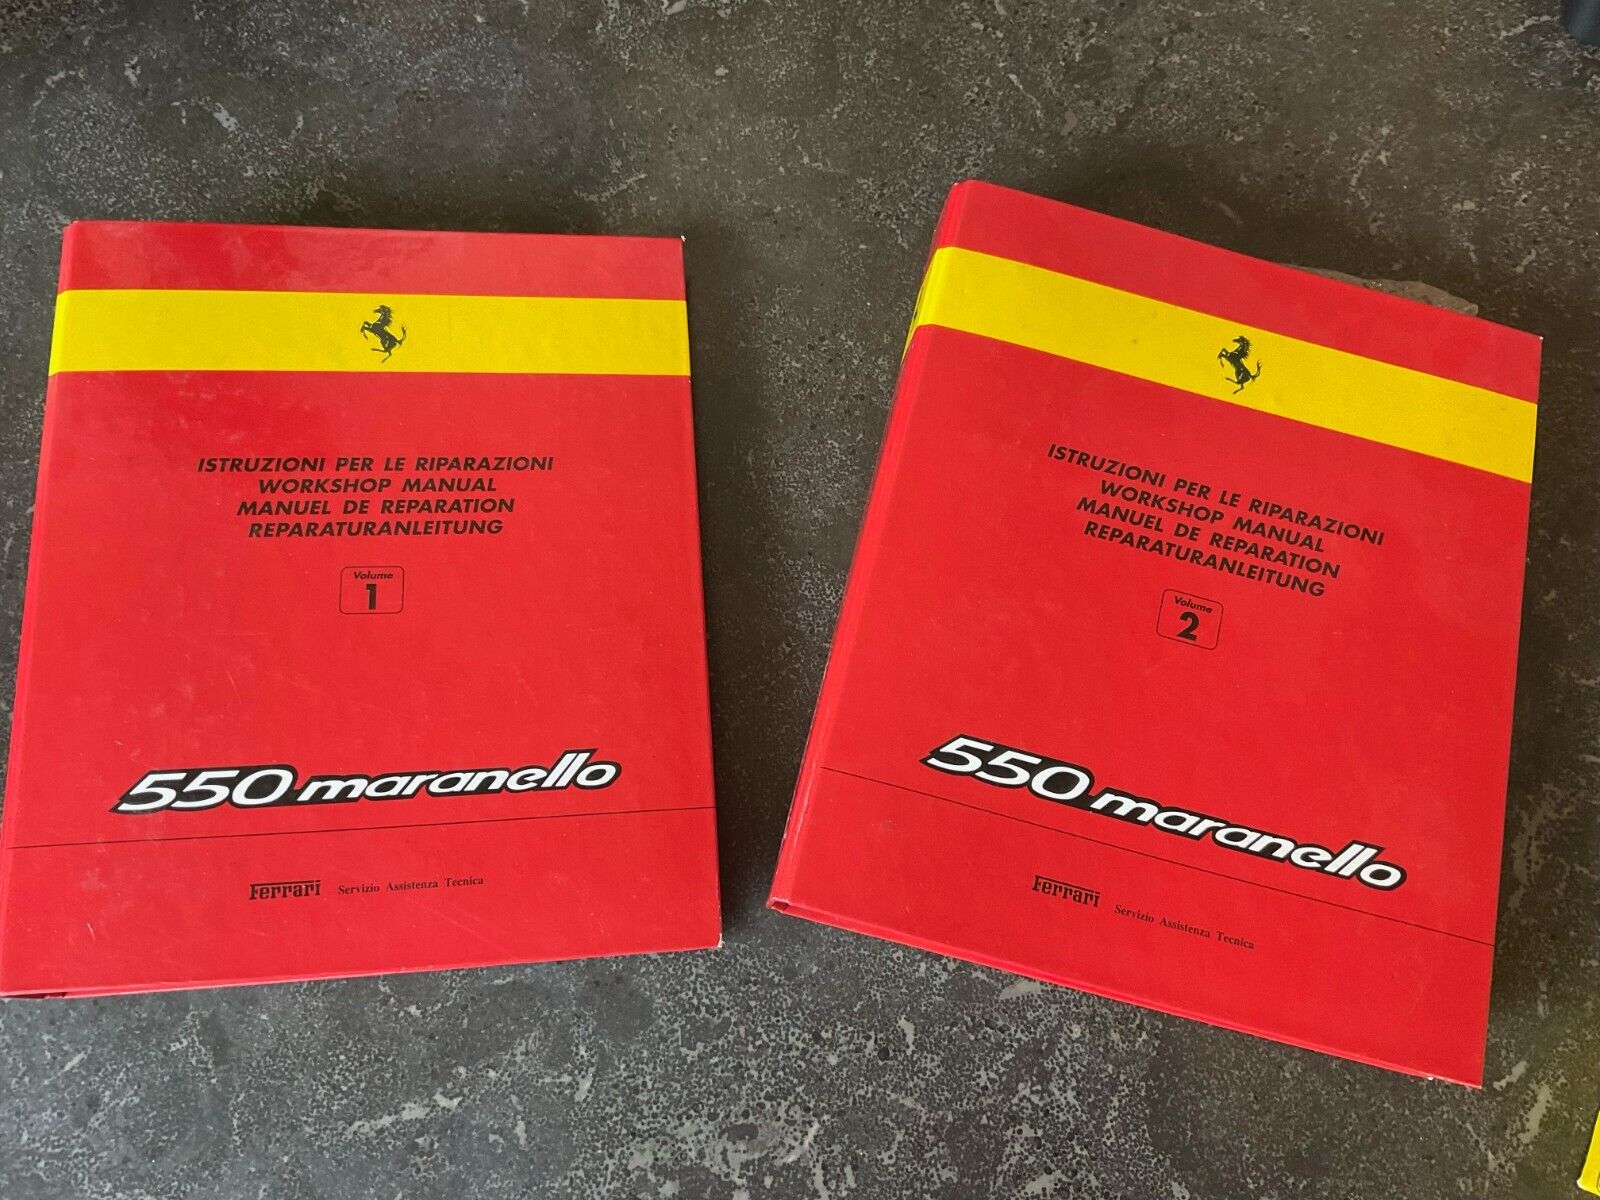 Ferrari 550 Maranello Complete Service Manual Circa 2000